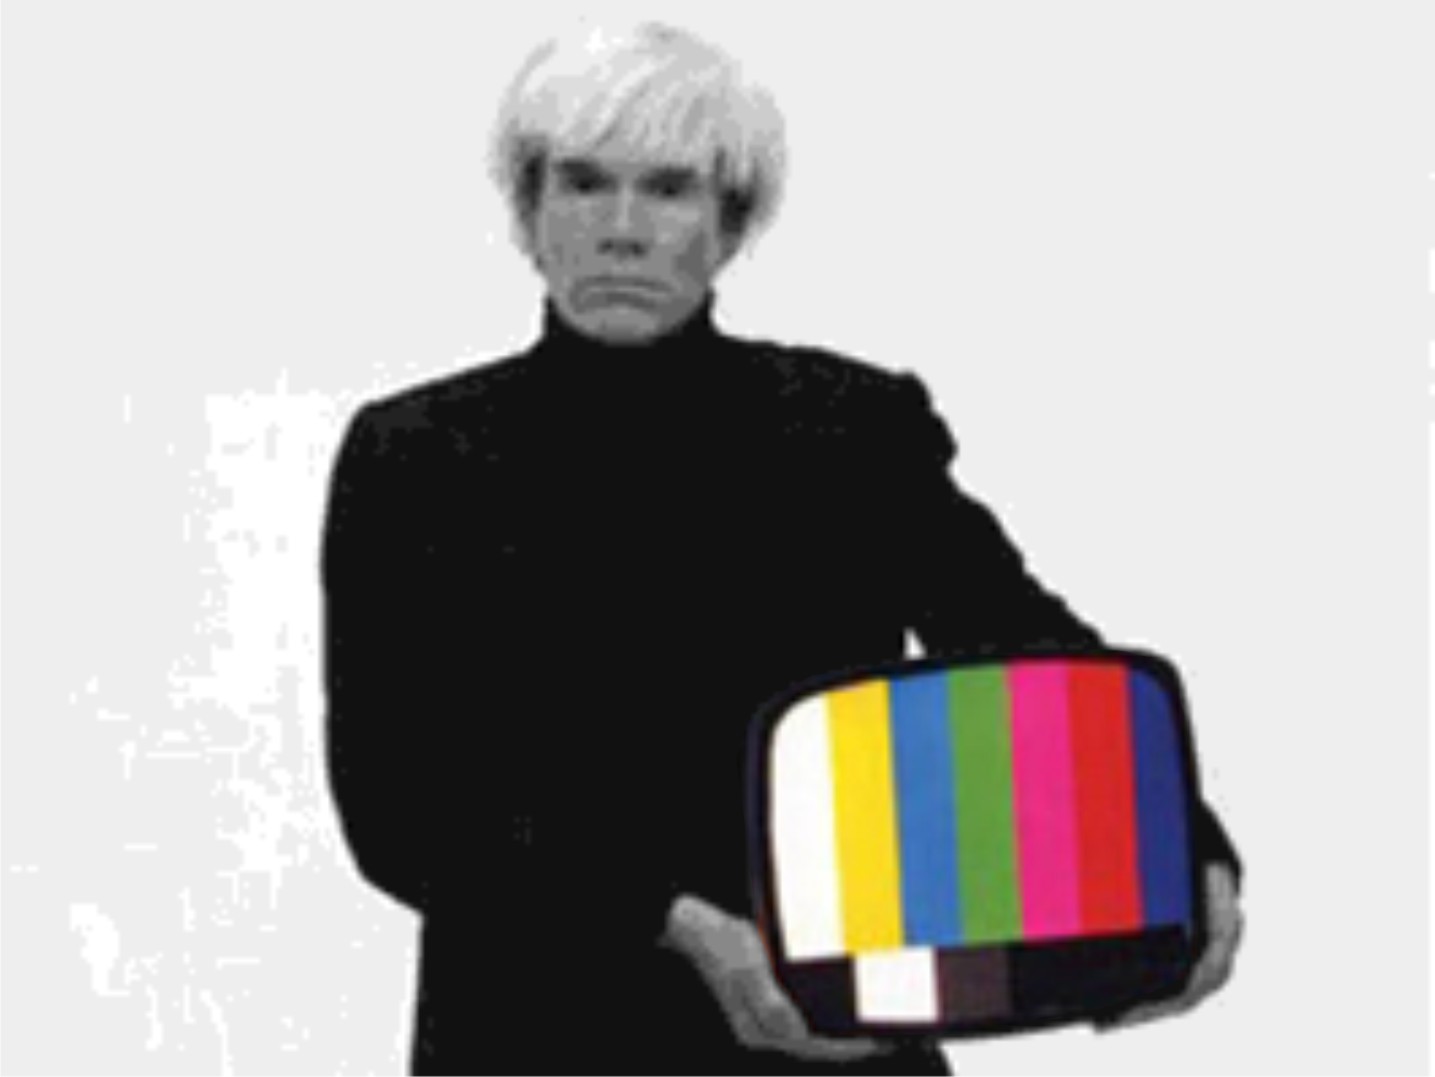 Warhol Tv